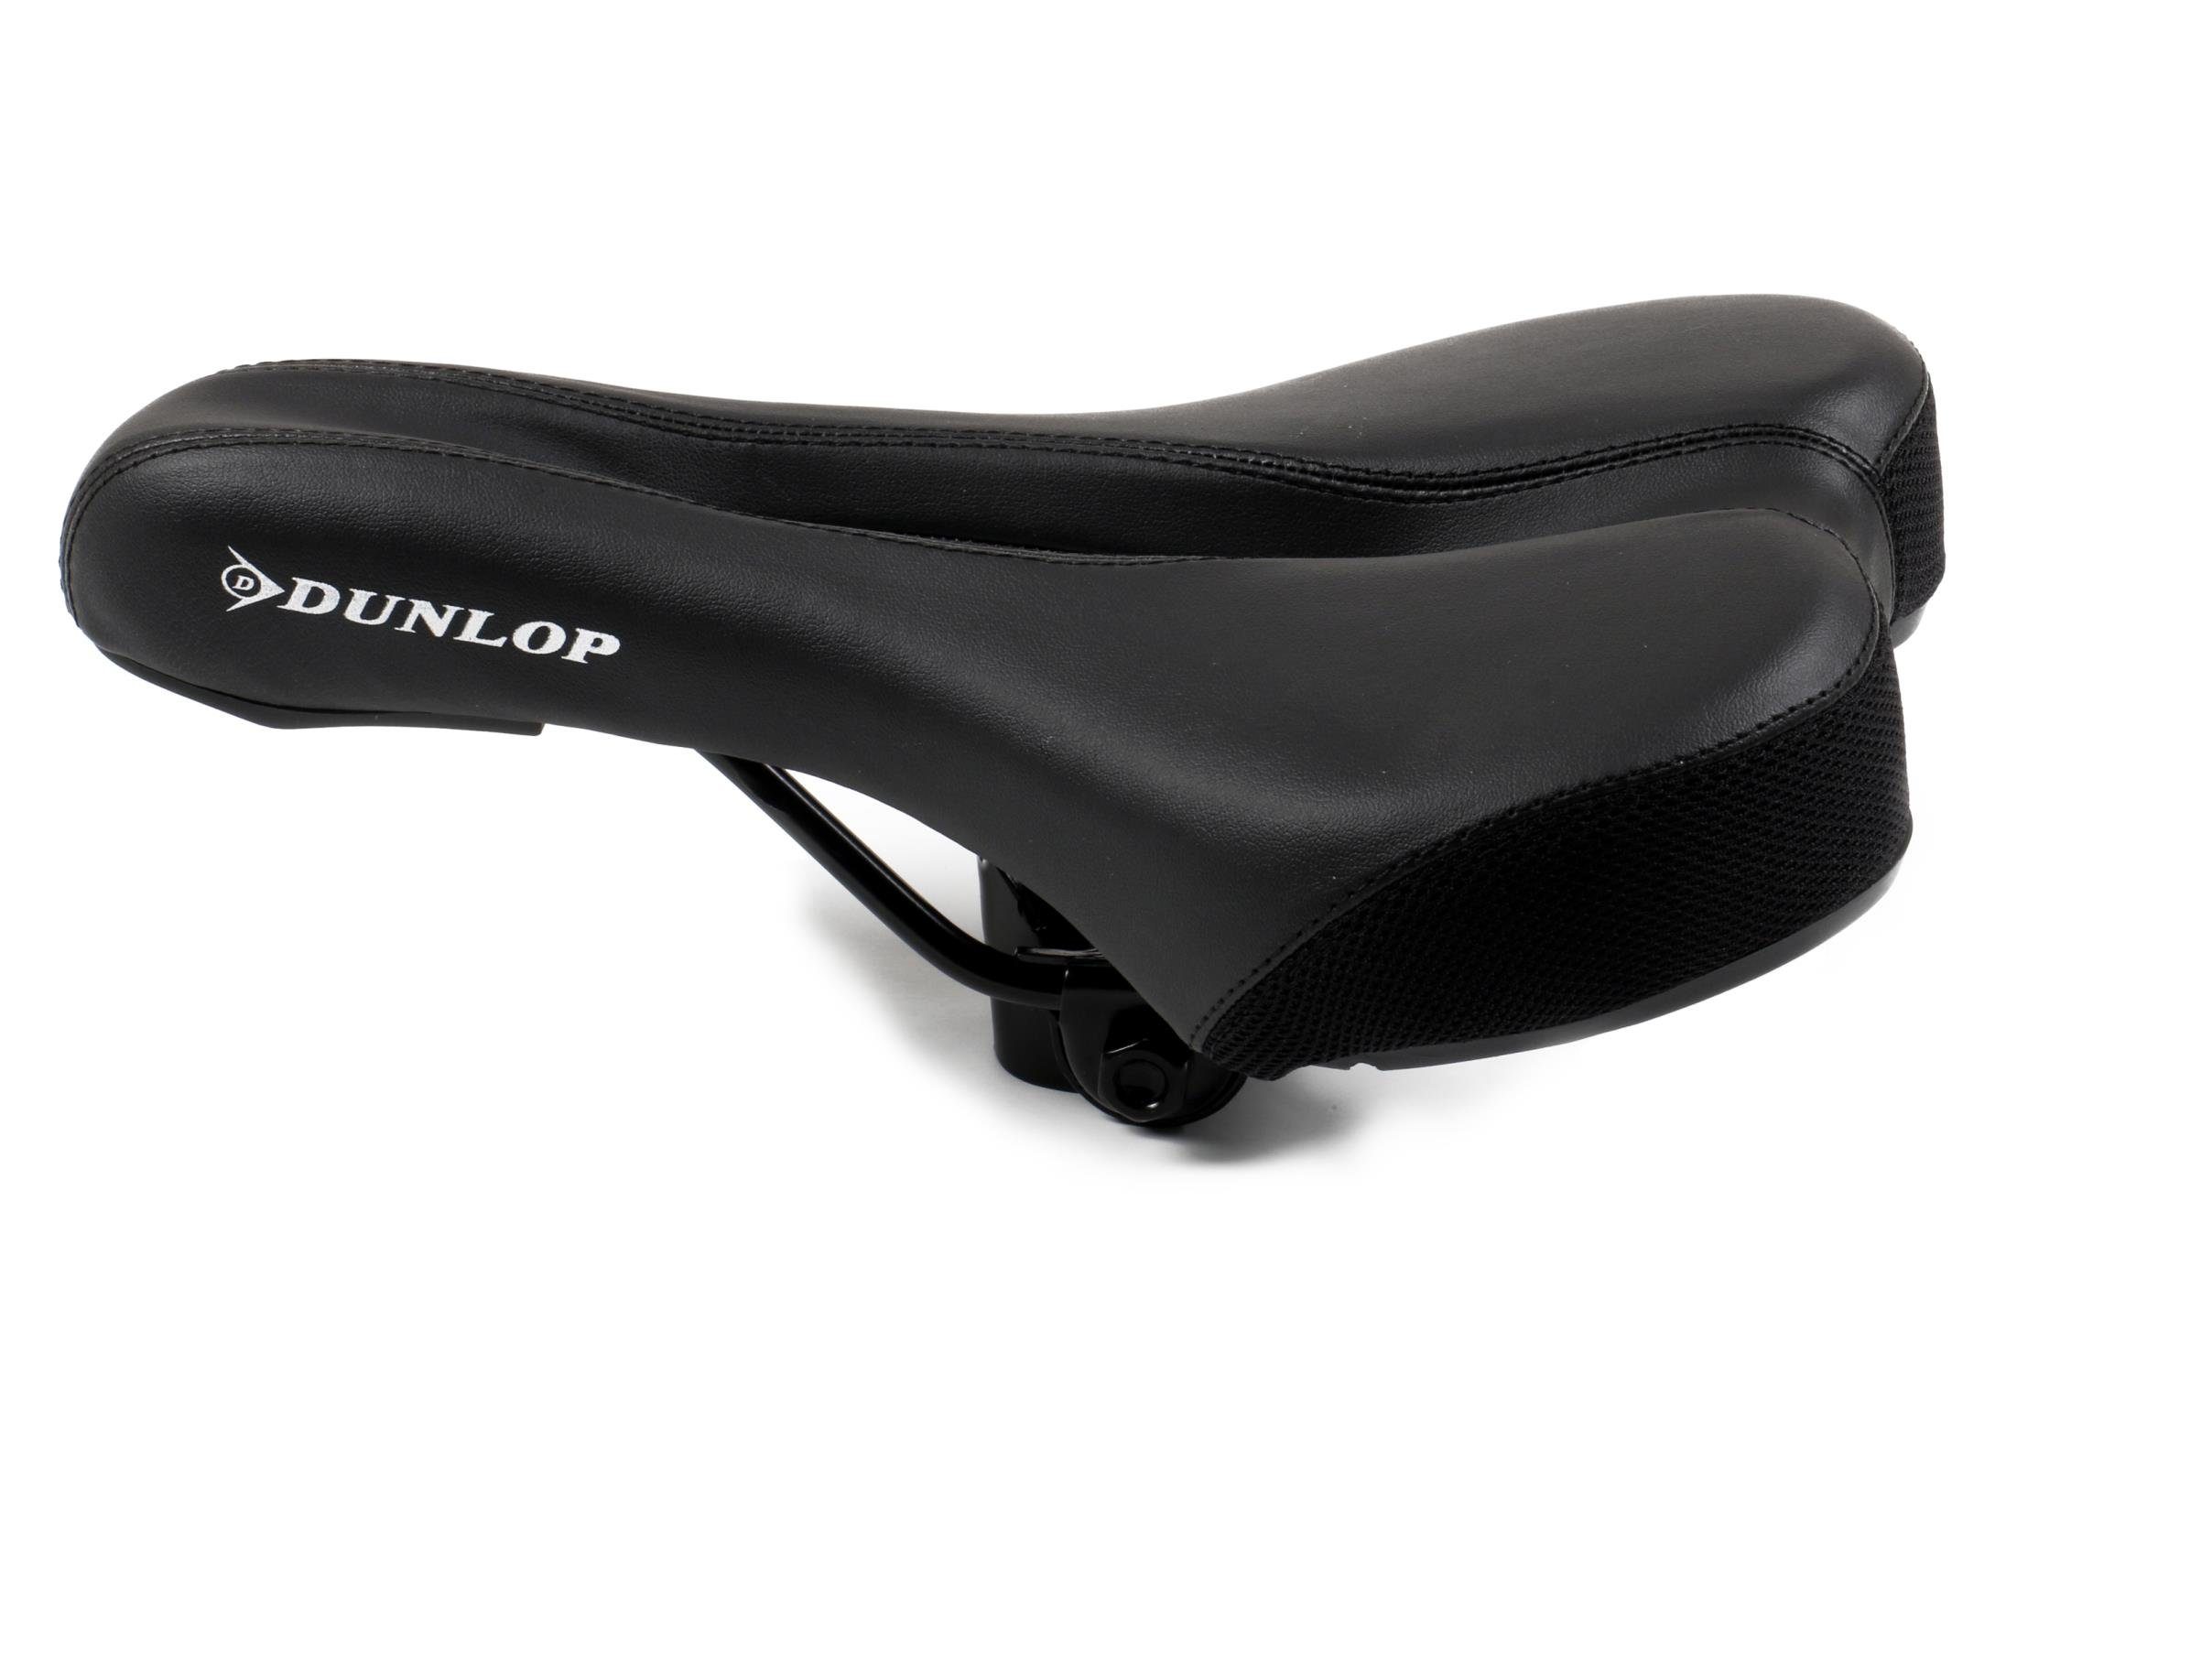 Dunlop Fahrradsattel für MTB, City-, und gefedert), Fahrradsattel Komfortzonenausschnitt (Sattel mit Touren- Rennenräder